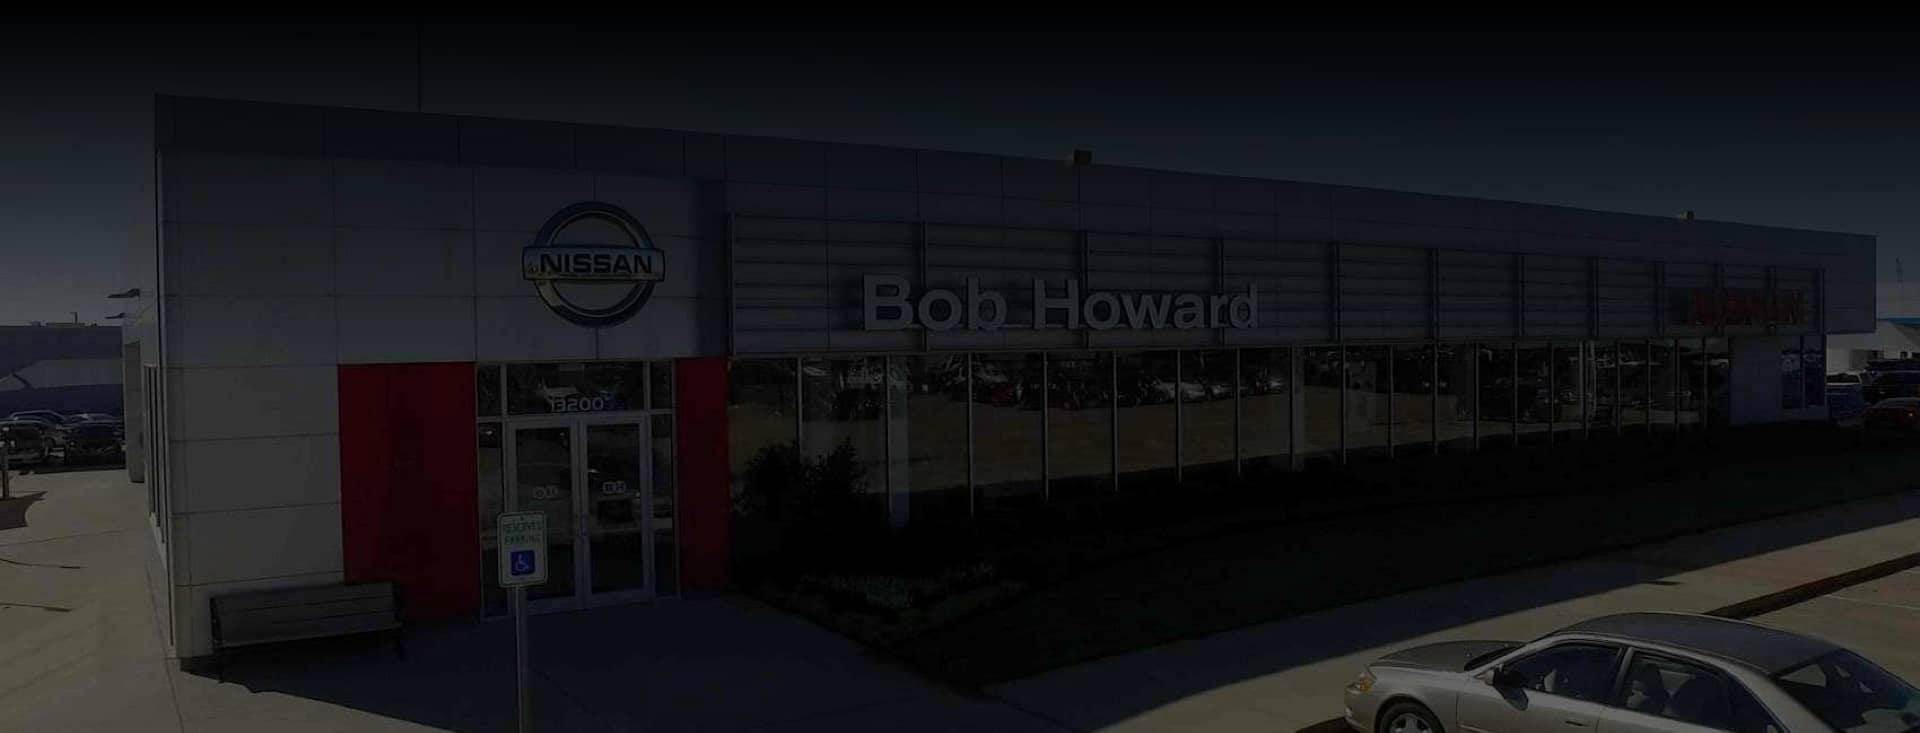 Bob Howard Dealership